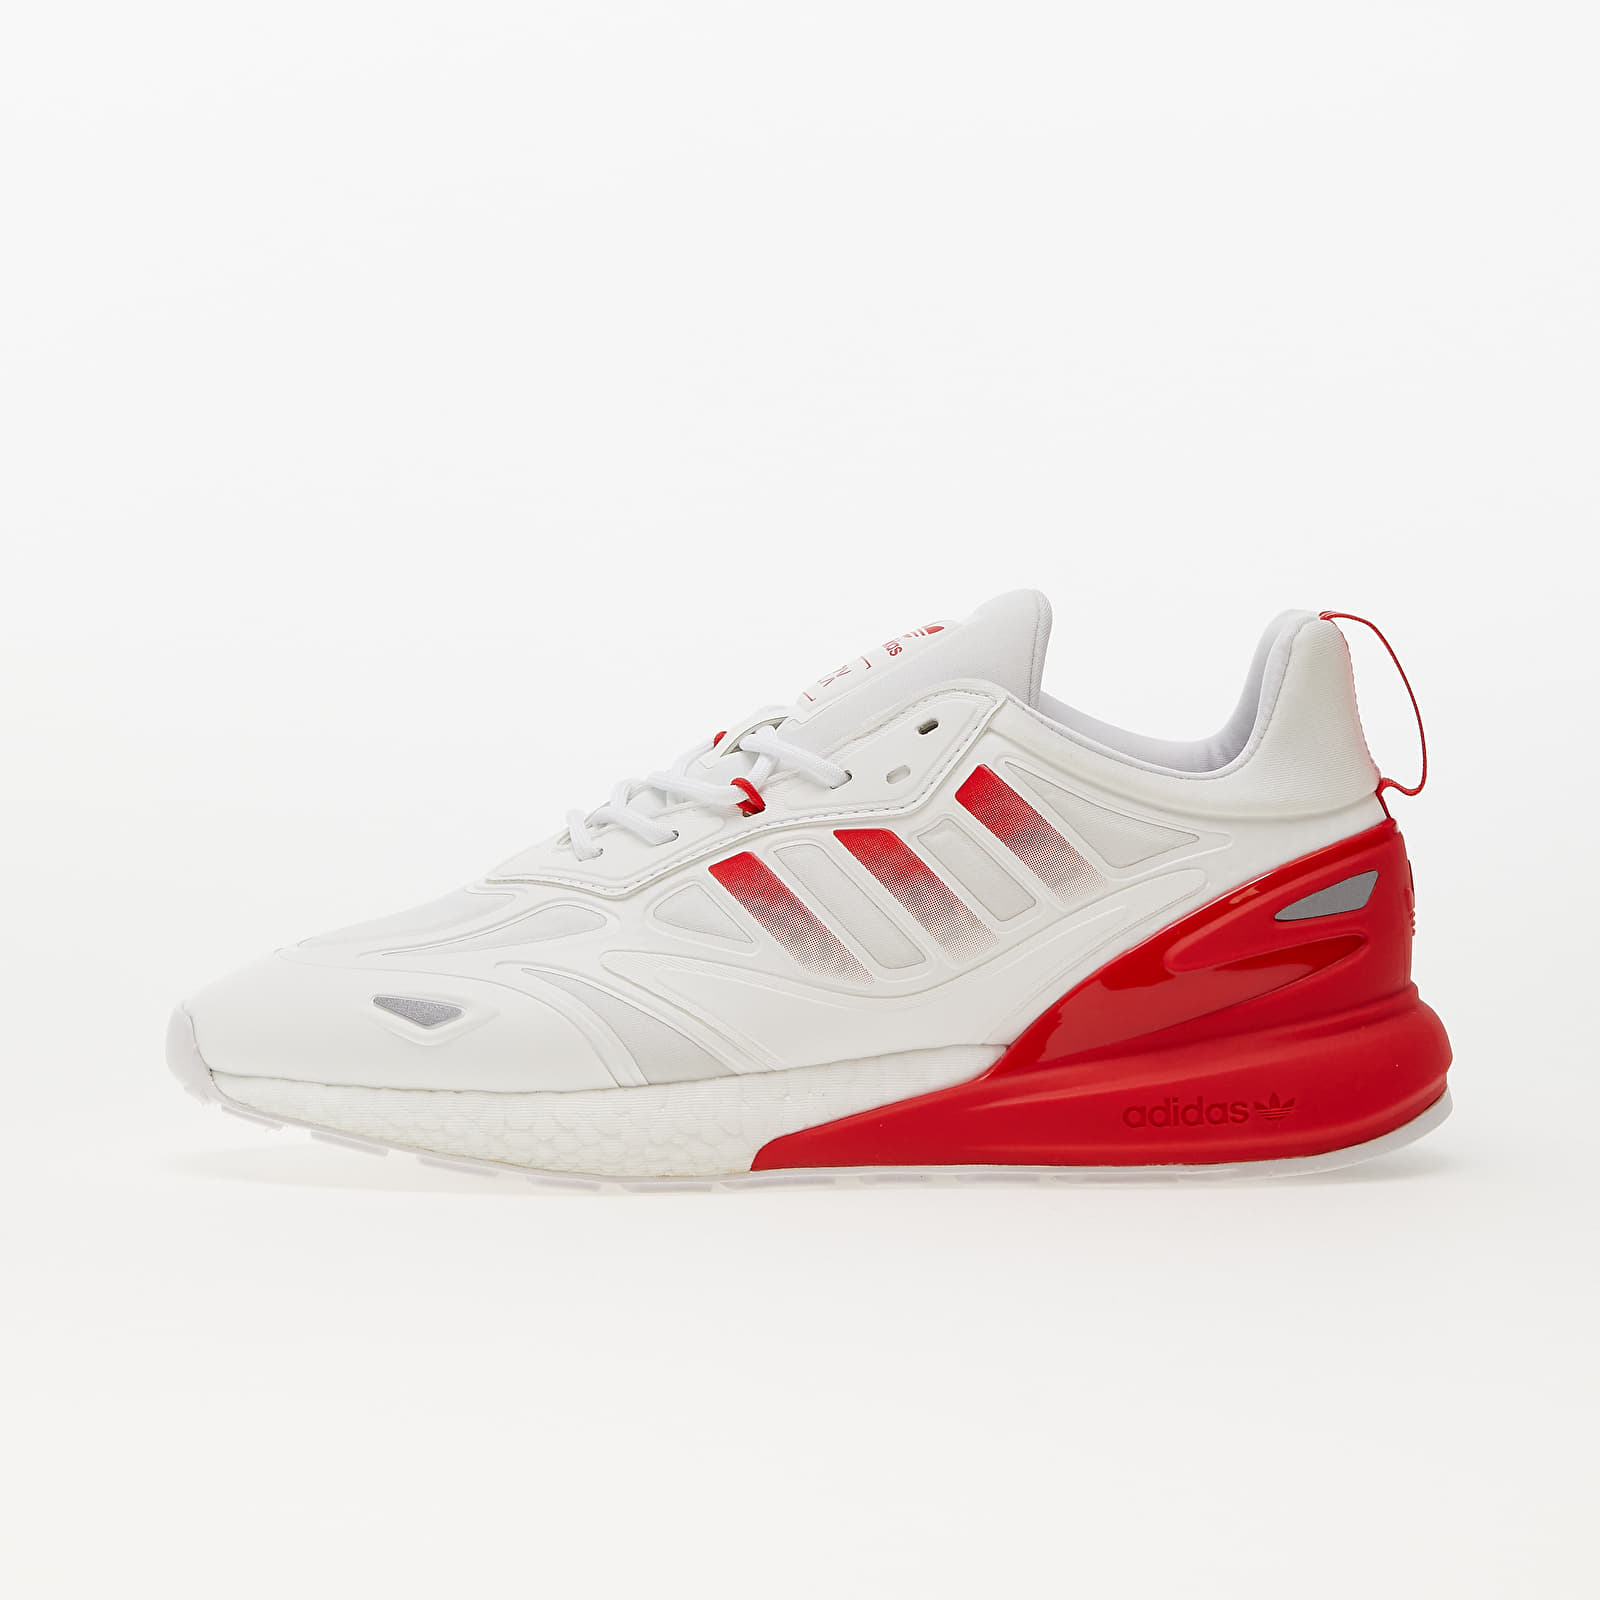 Ftw 2.0 Metalic/ White/ Silver Vivid und 2K Herren Footshop BOOST | Red Schuhe ZX adidas Sneaker